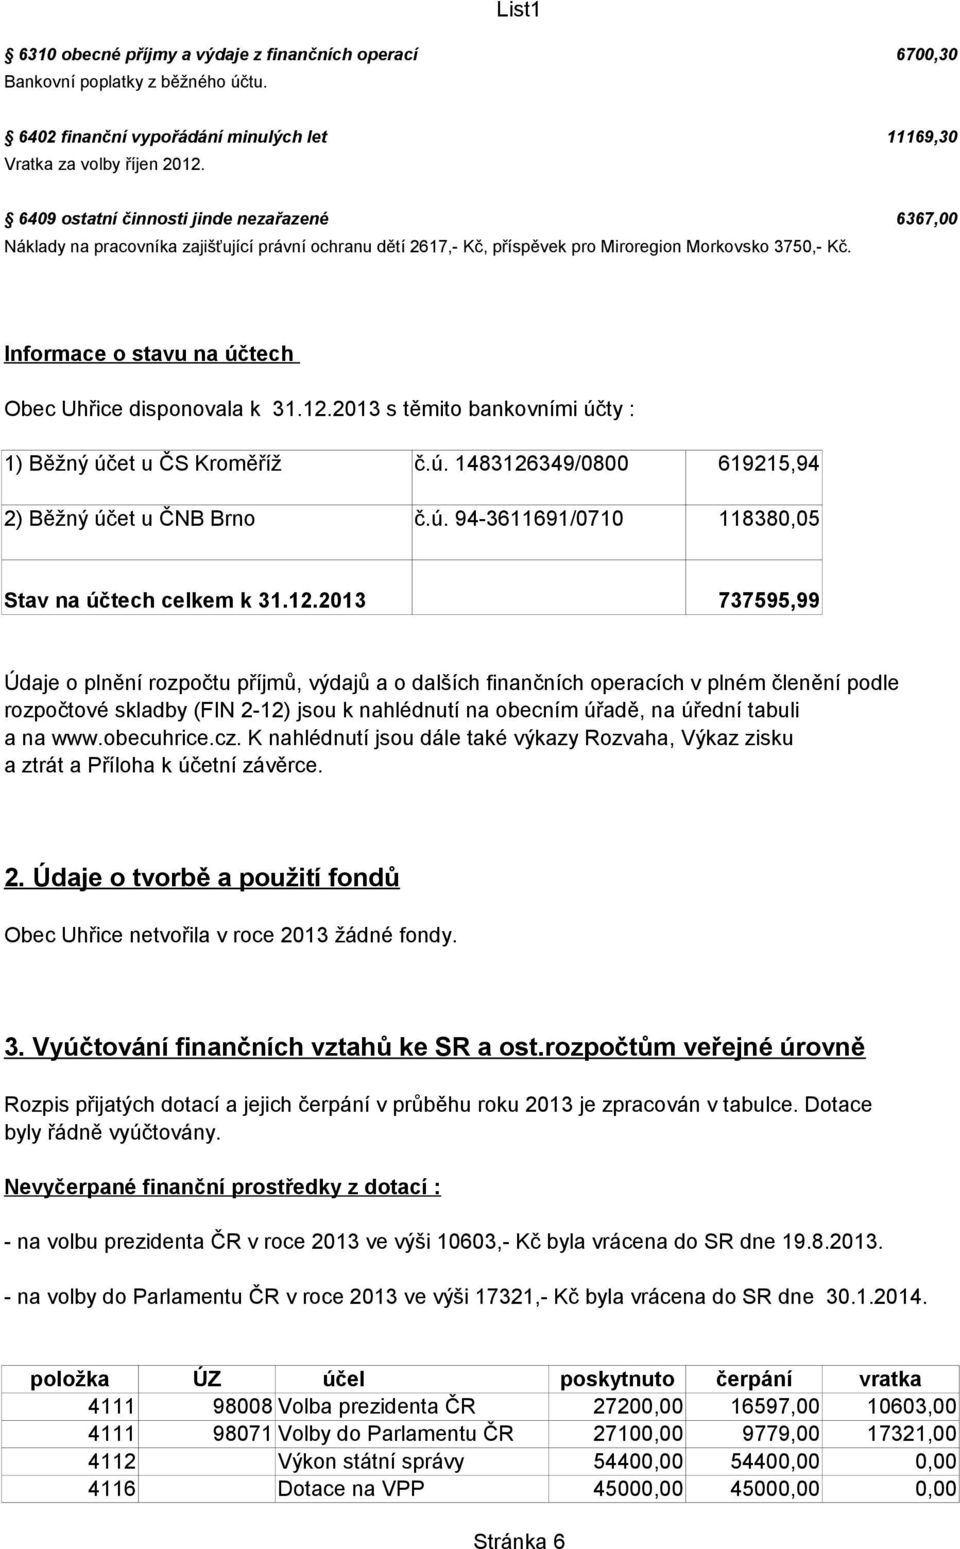 Informace o stavu na účtech Obec Uhřice disponovala k 31.12.2013 s těmito bankovními účty : 1) Běžný účet u ČS Kroměříž č.ú. 1483126349/0800 619215,94 2) Běžný účet u ČNB Brno č.ú. 94-3611691/0710 118380,05 Stav na účtech celkem k 31.